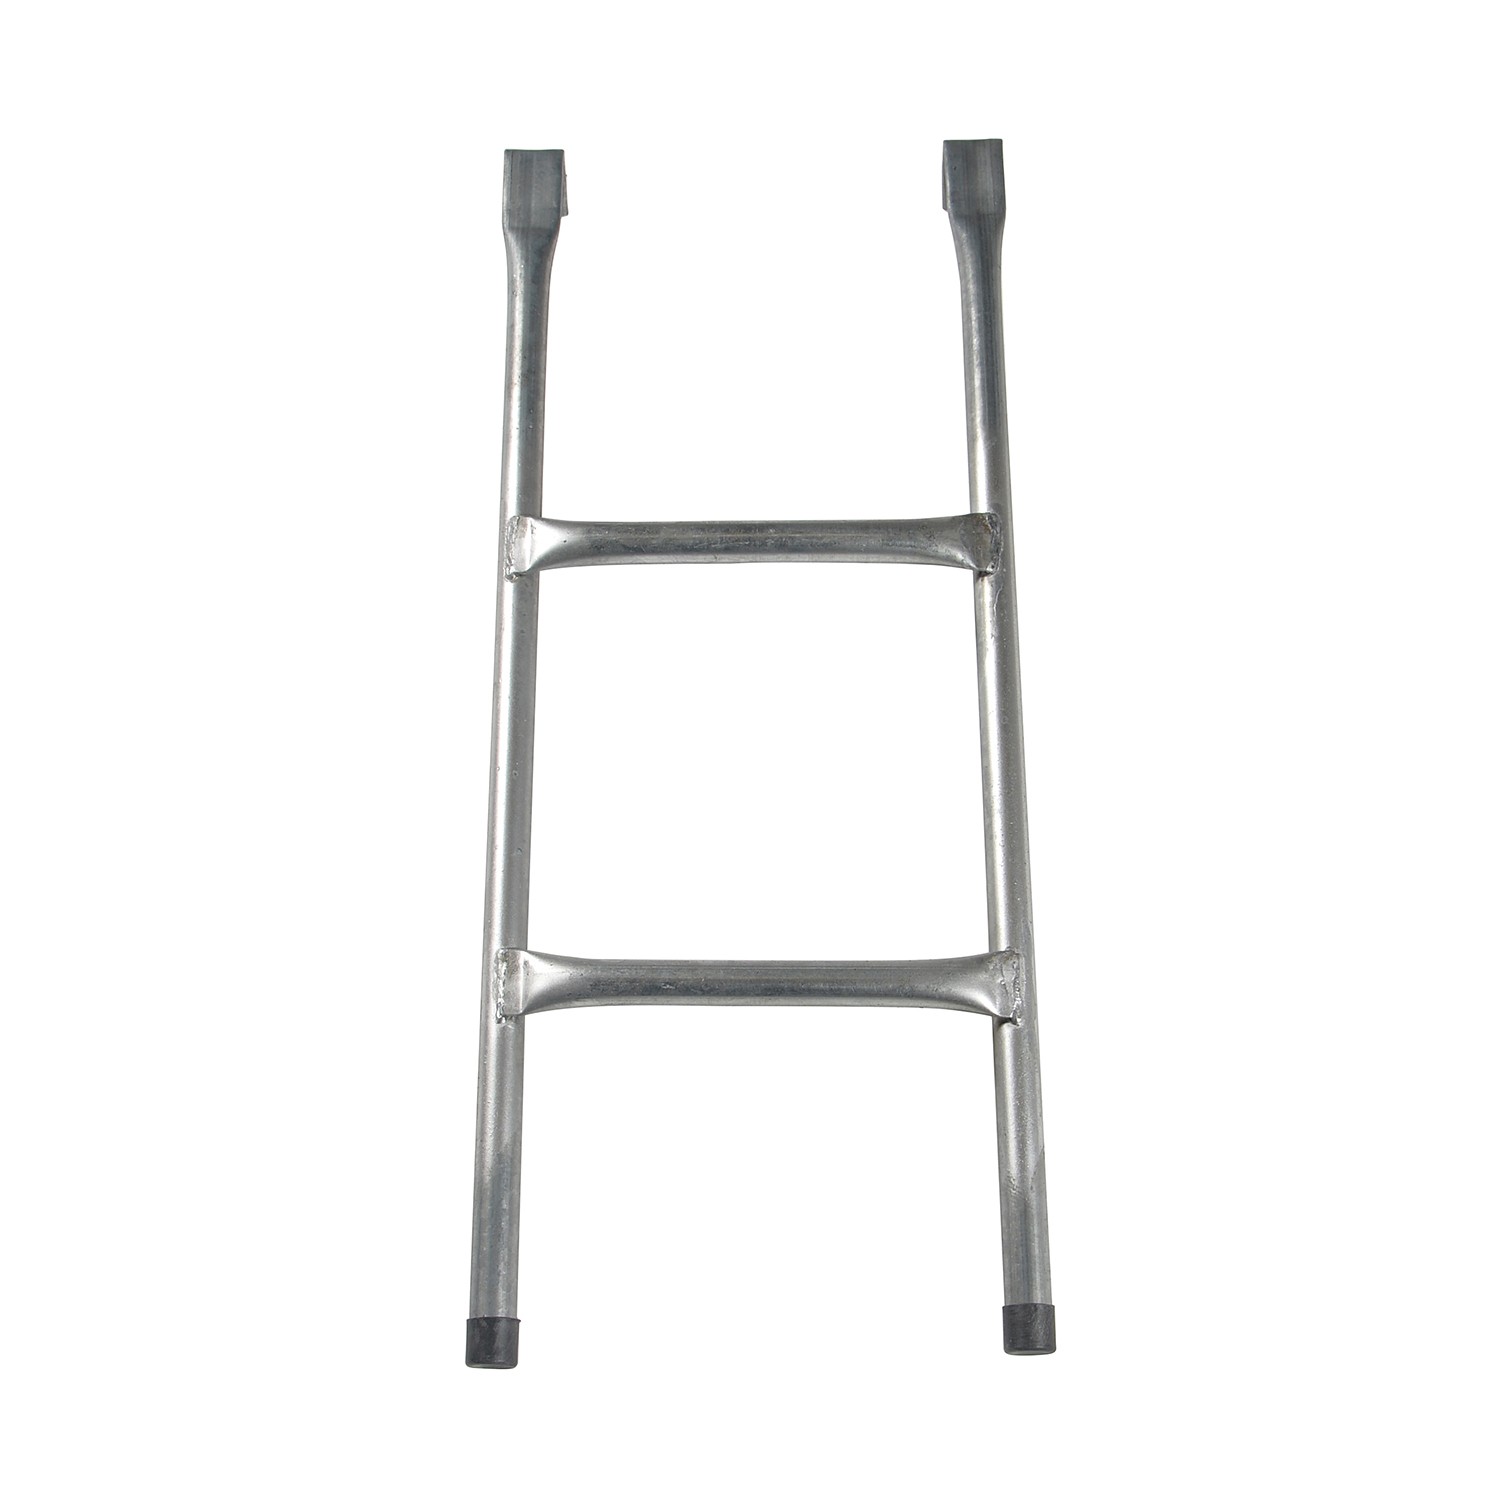 Escalera - Cama Elástica  - Universal 90 Cm - gris - 